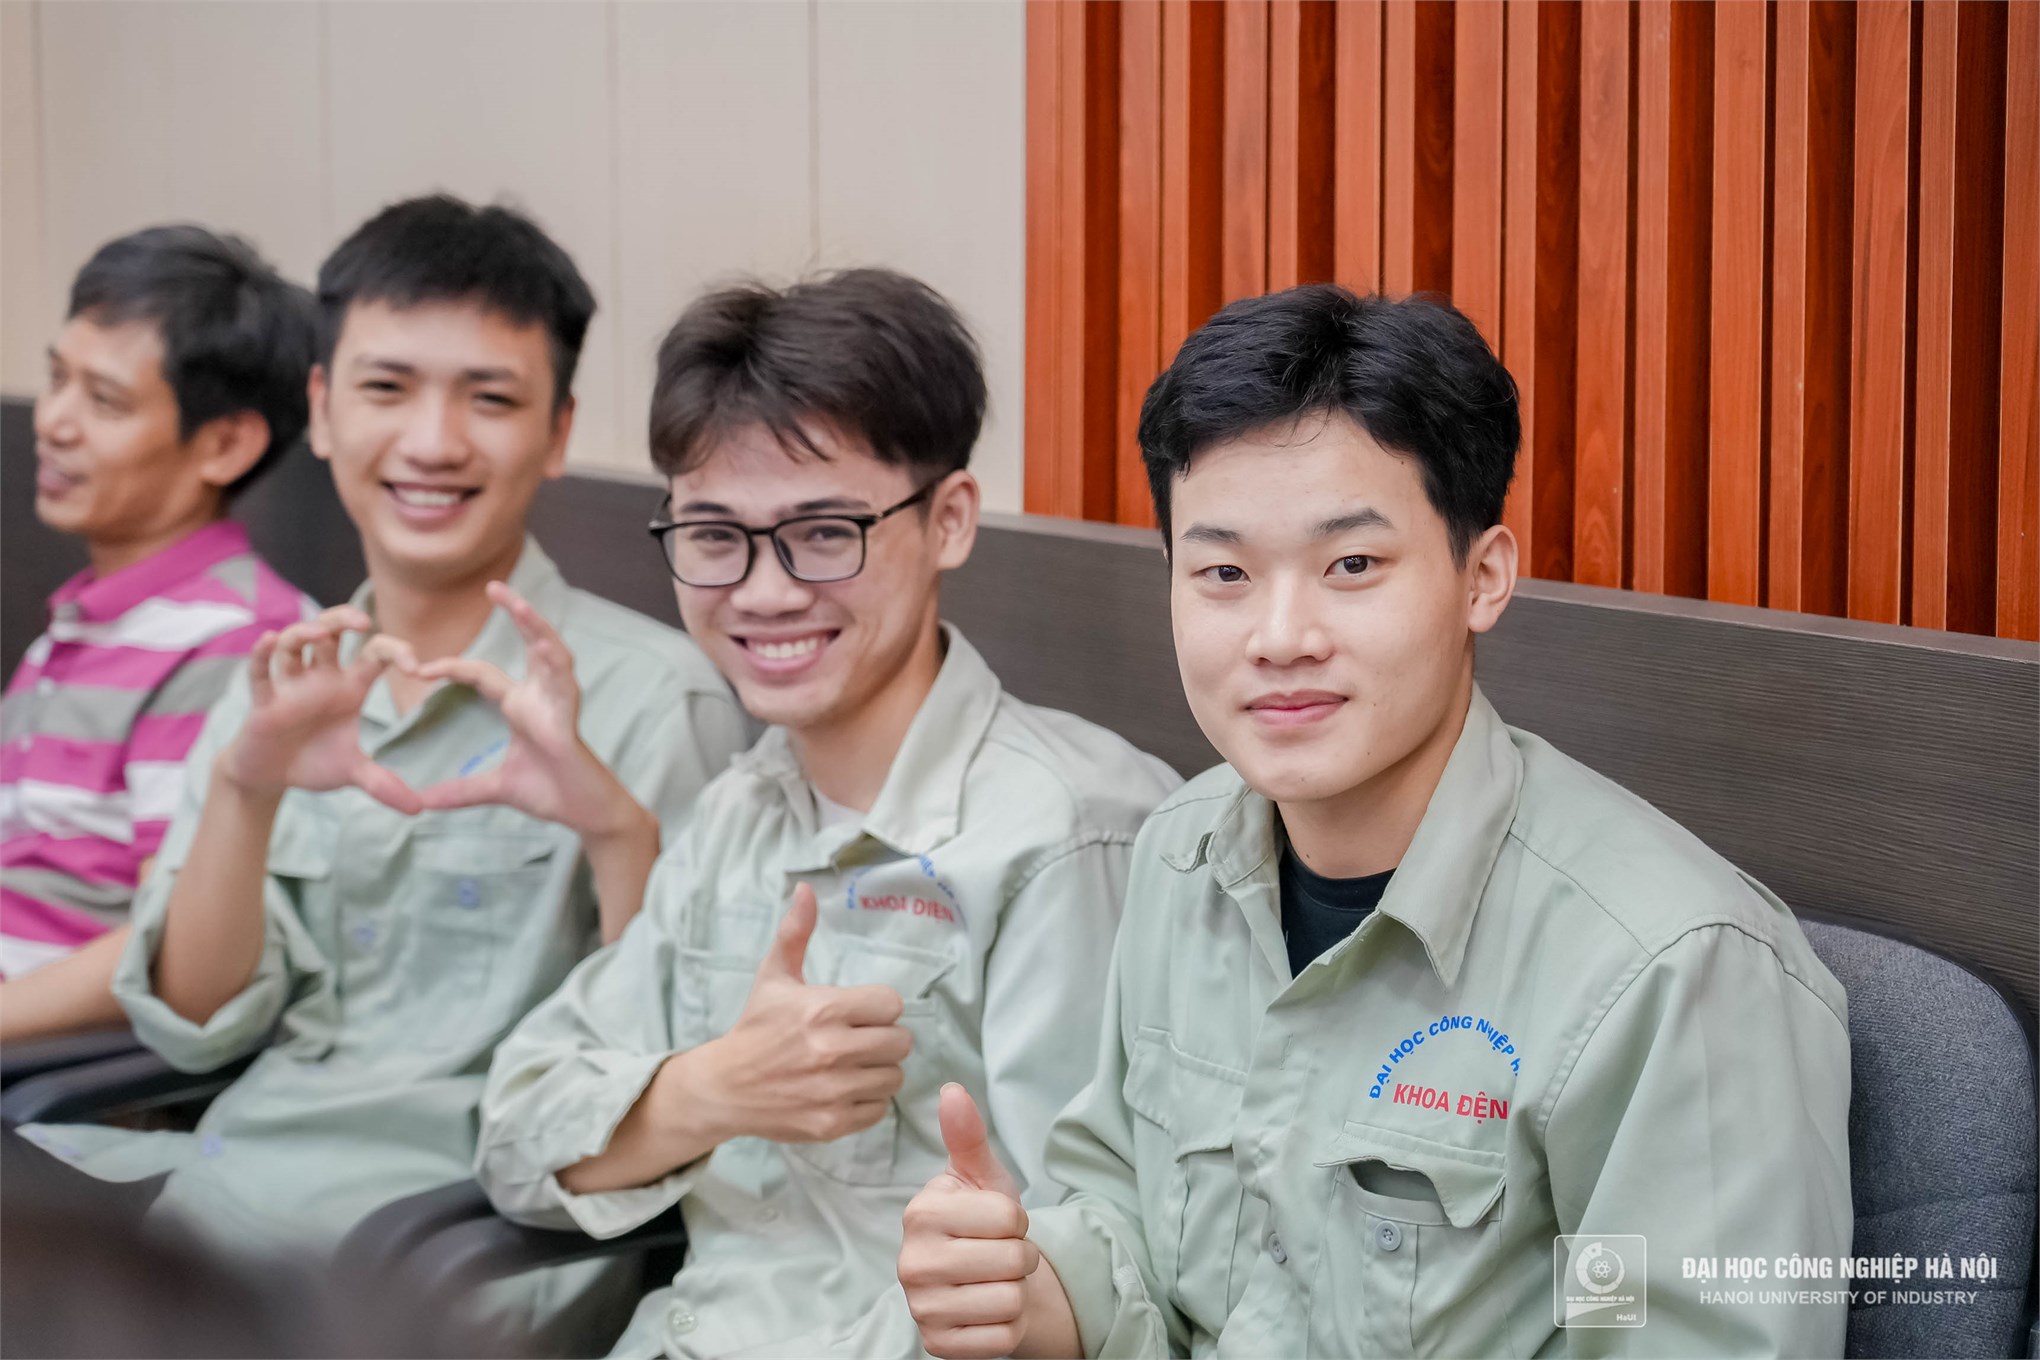 Đại học Công nghiệp Hà Nội nhận bàn giao thiết bị tài trợ từ Công ty TNHH điều hòa không khí Carrier Việt Nam 